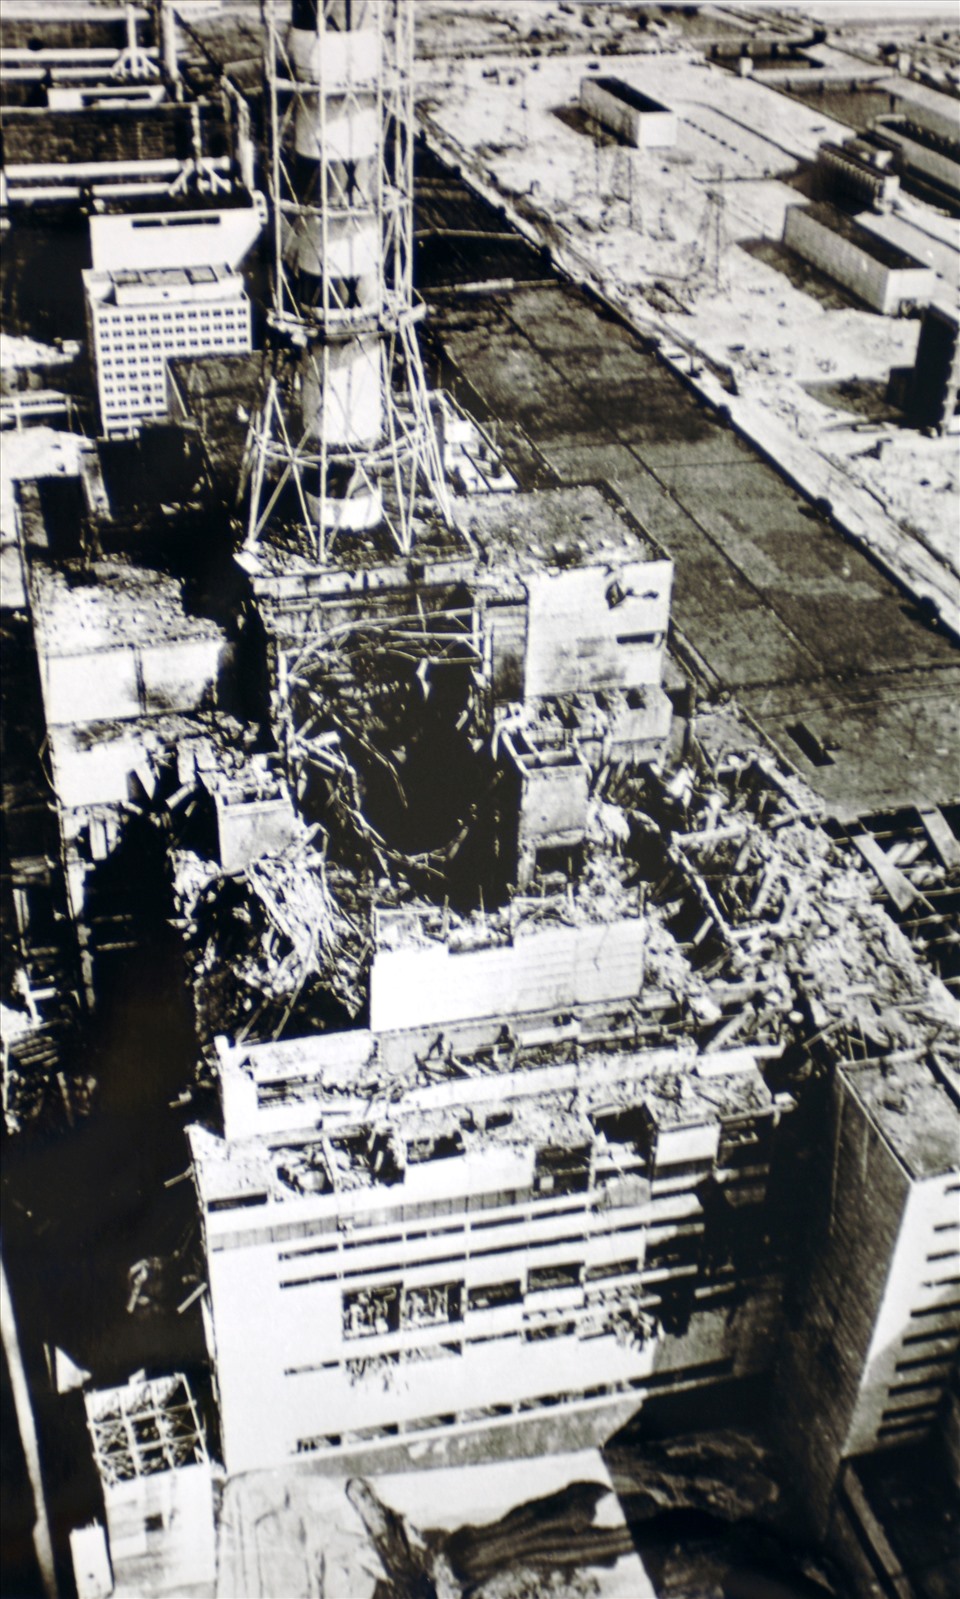 Ngày 26.4.1986 đã xảy ra vụ tai nạn lớn nhất trong toàn bộ lịch sử ngành năng lượng hạt nhân thế giới tại nhà máy năng lượng hạt nhân Chernobyl, Ukraina. Ảnh: Wiki